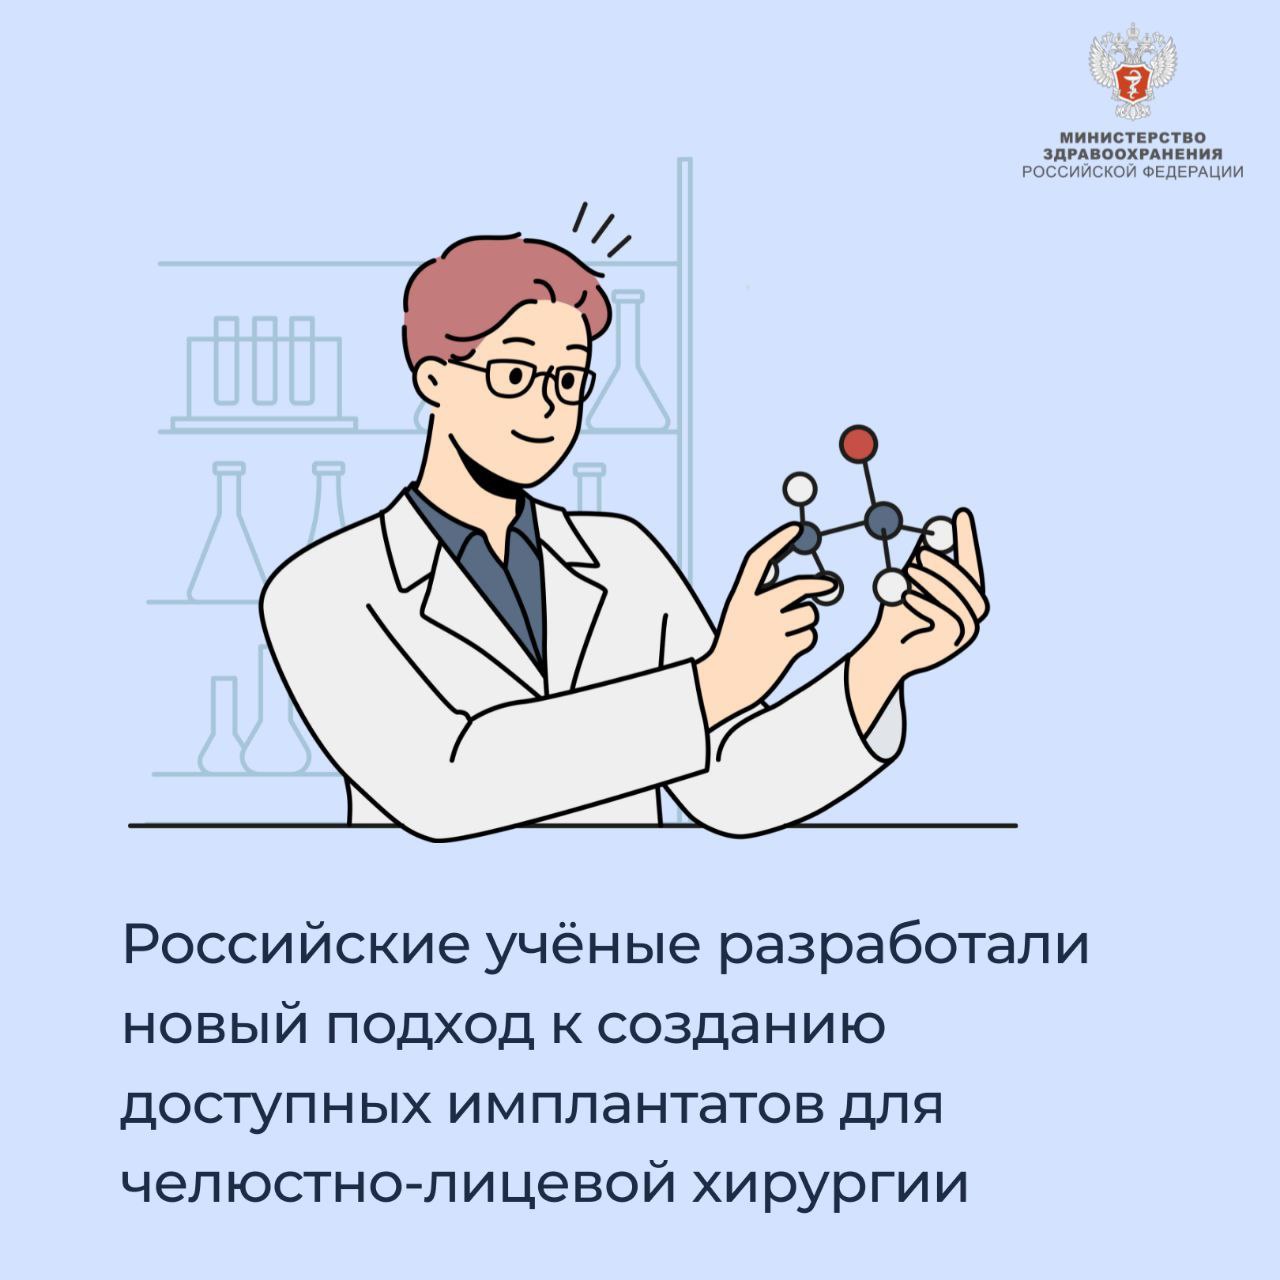 Российские учёные разработали новый подход к созданию доступных имплантатов для челюстно-лицевой хирургии 